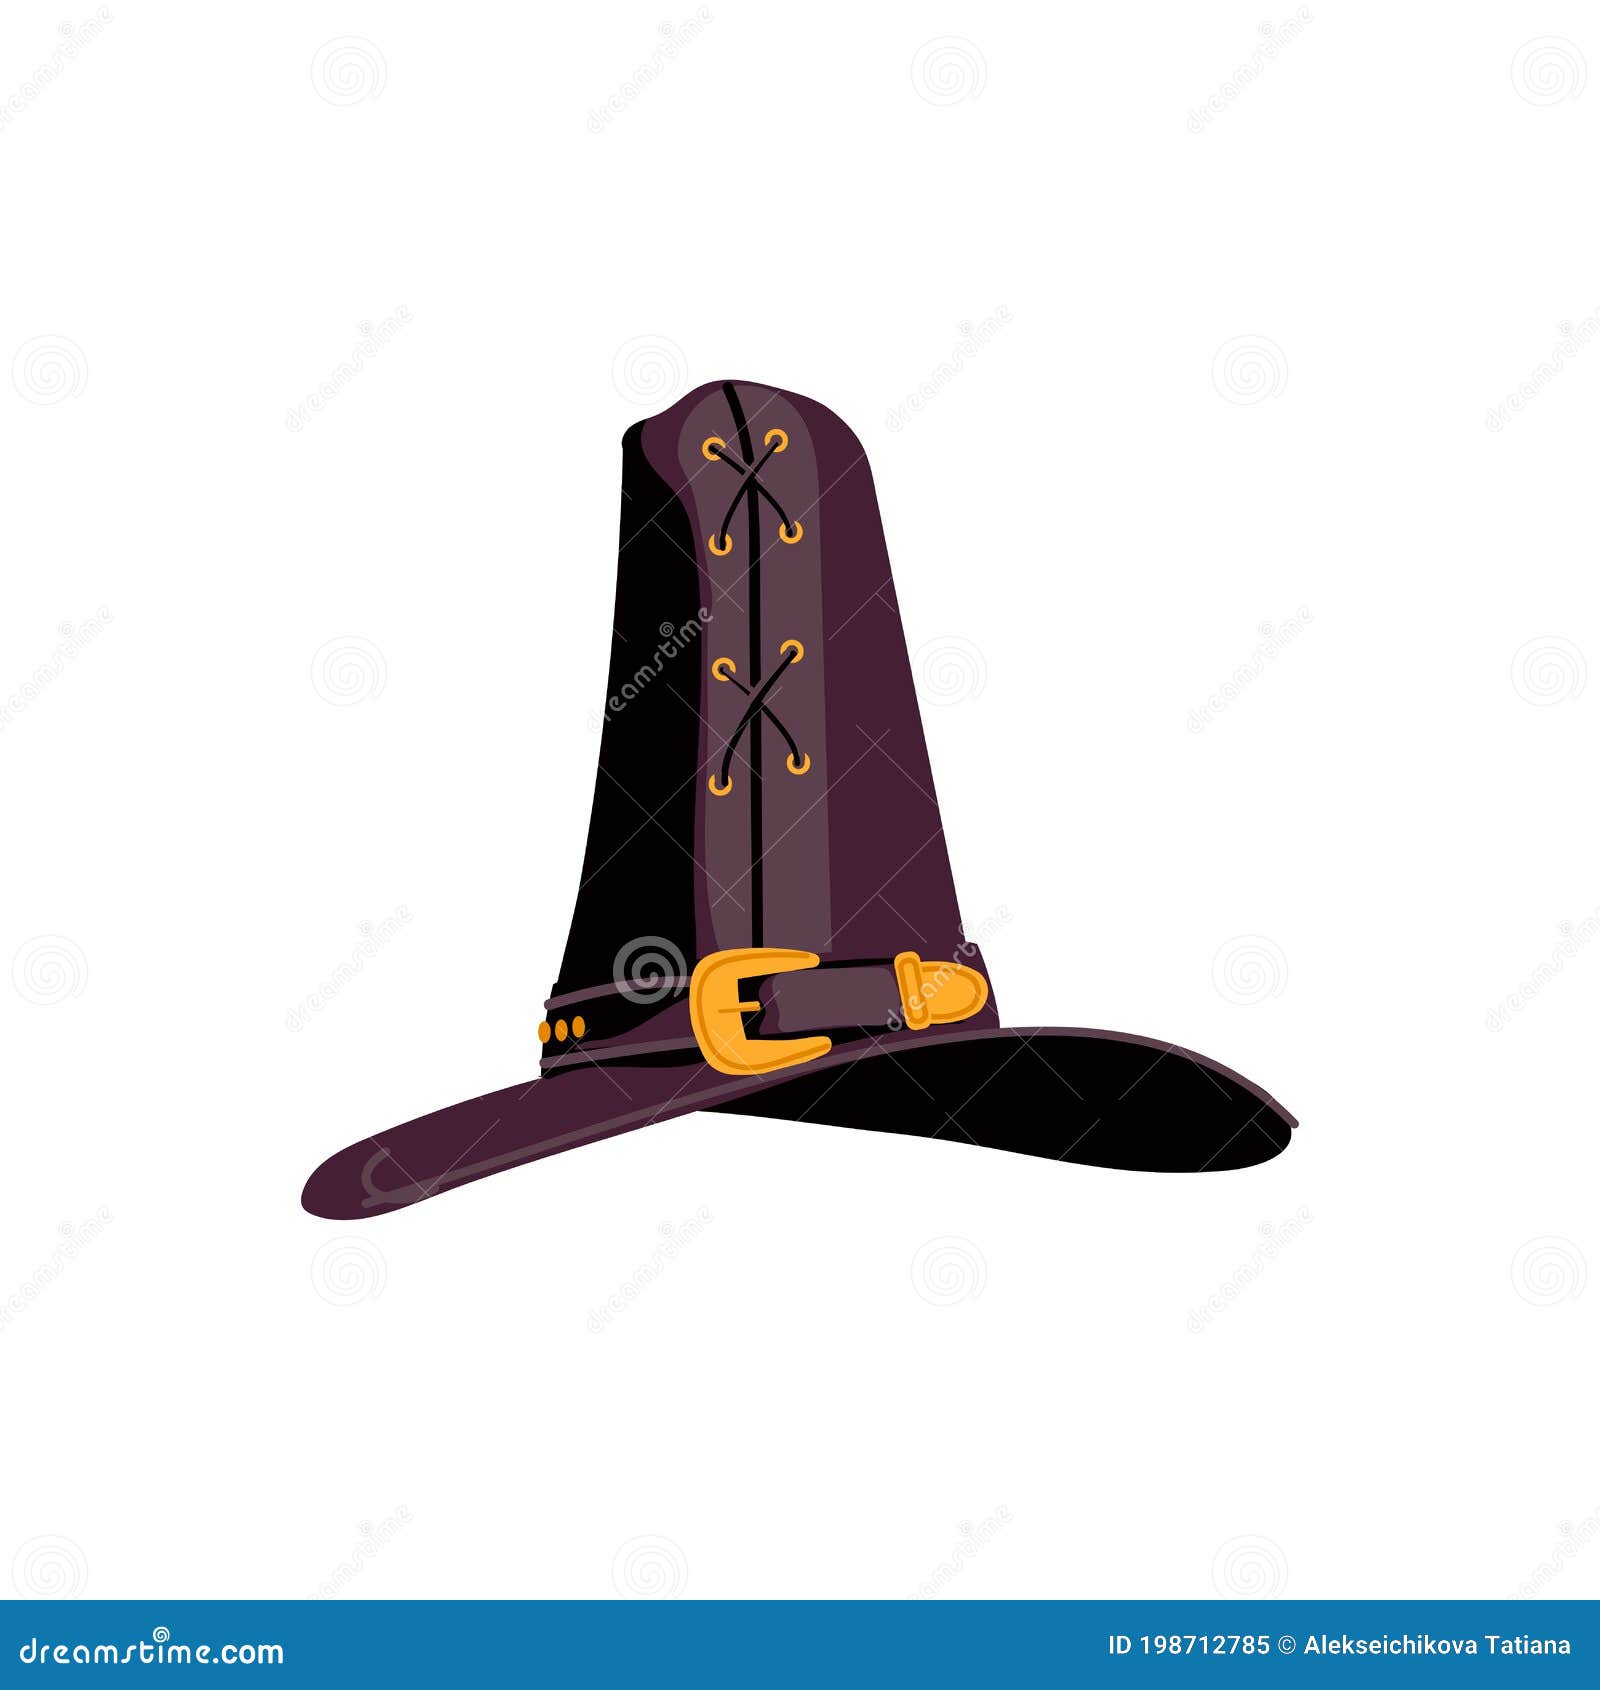 Desenho de chapéu de cowboy, bruxa fofa, roxo, lendário criatura